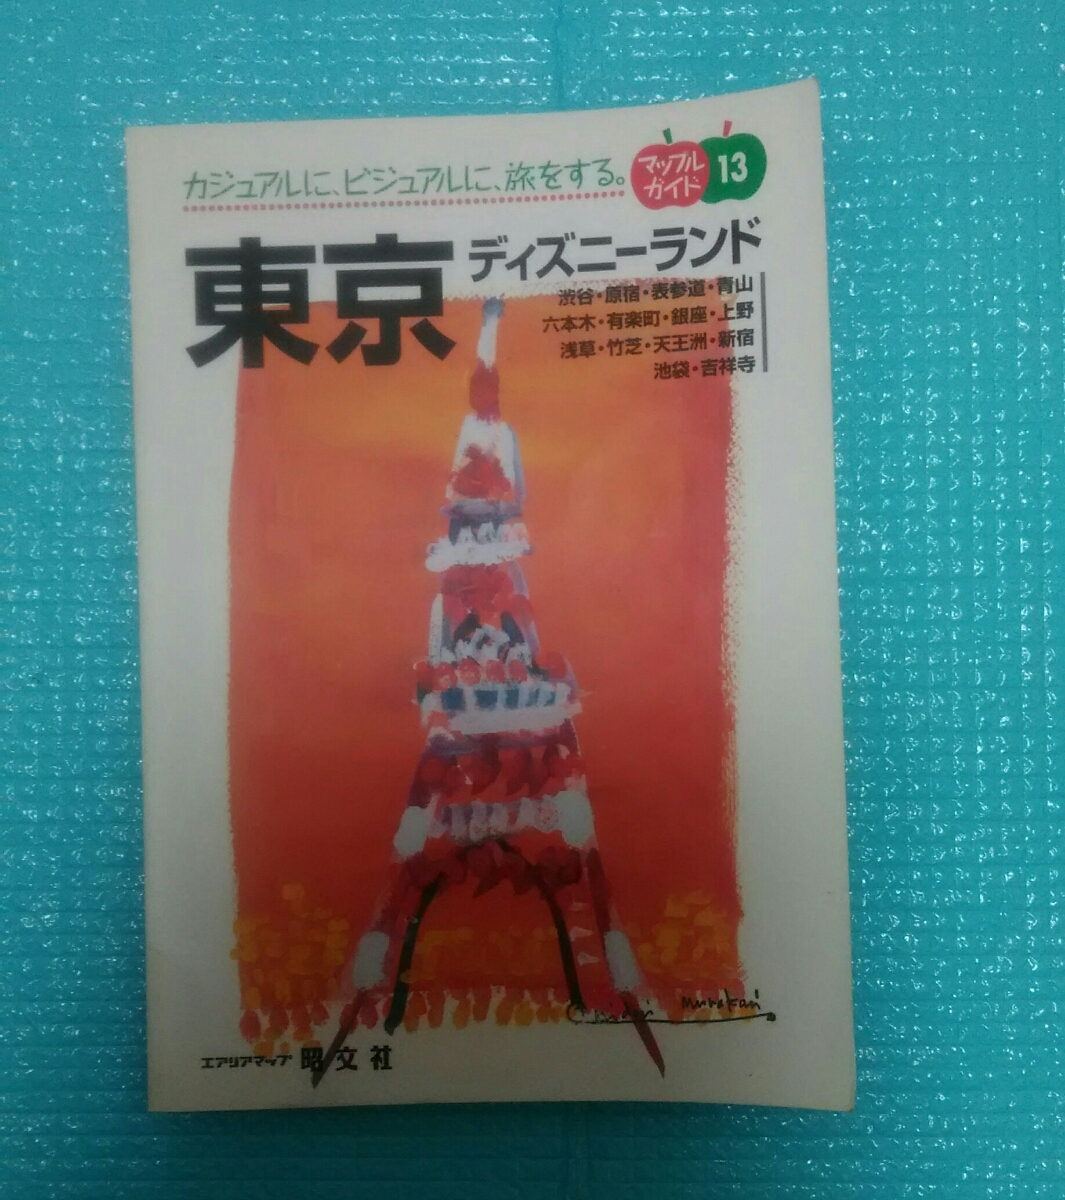 東京 ディズニーランド マップルガイド13 本 Book 地図 旅行ガイド Nvgzp Nl